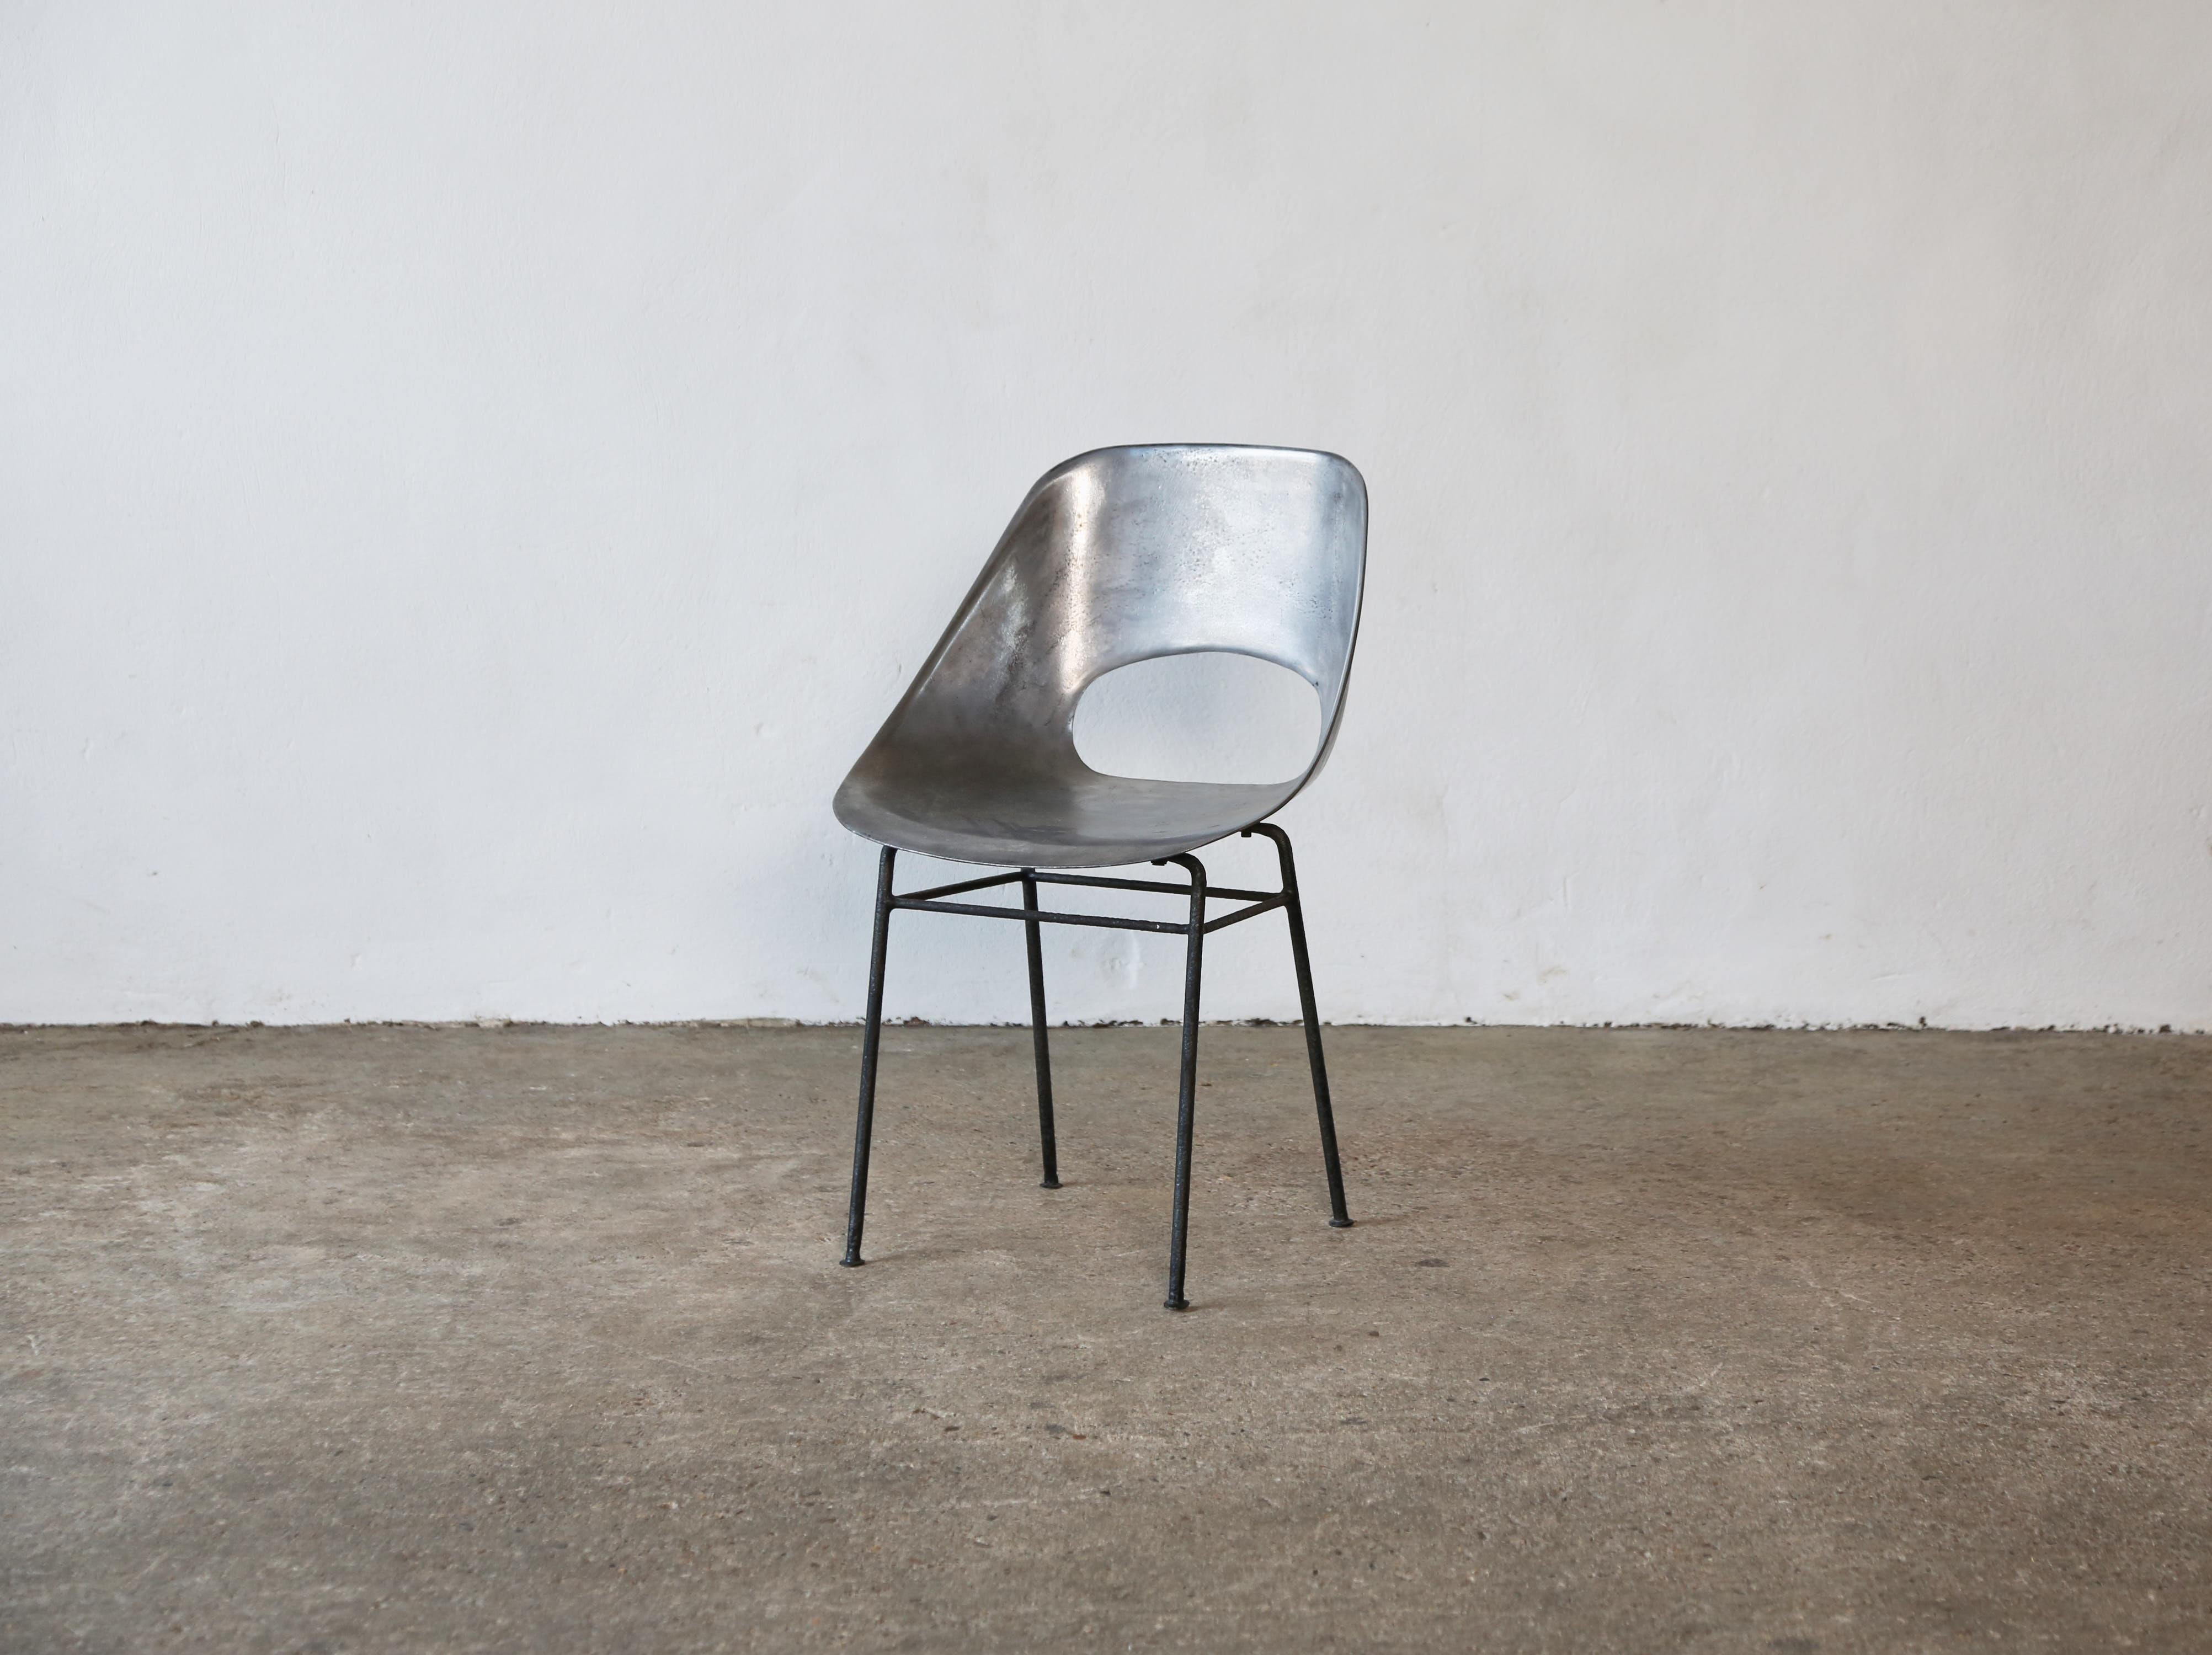 Eine seltene Variante des Pierre Guariche Tulip / Tulipe Stuhls aus Aluminiumguss, aus den 1950er Jahren. In gutem Vintage-Zustand. Der Stuhl ist professionell poliert worden. Natürliche Unregelmäßigkeiten im Metallguss verleihen diesen Stühlen